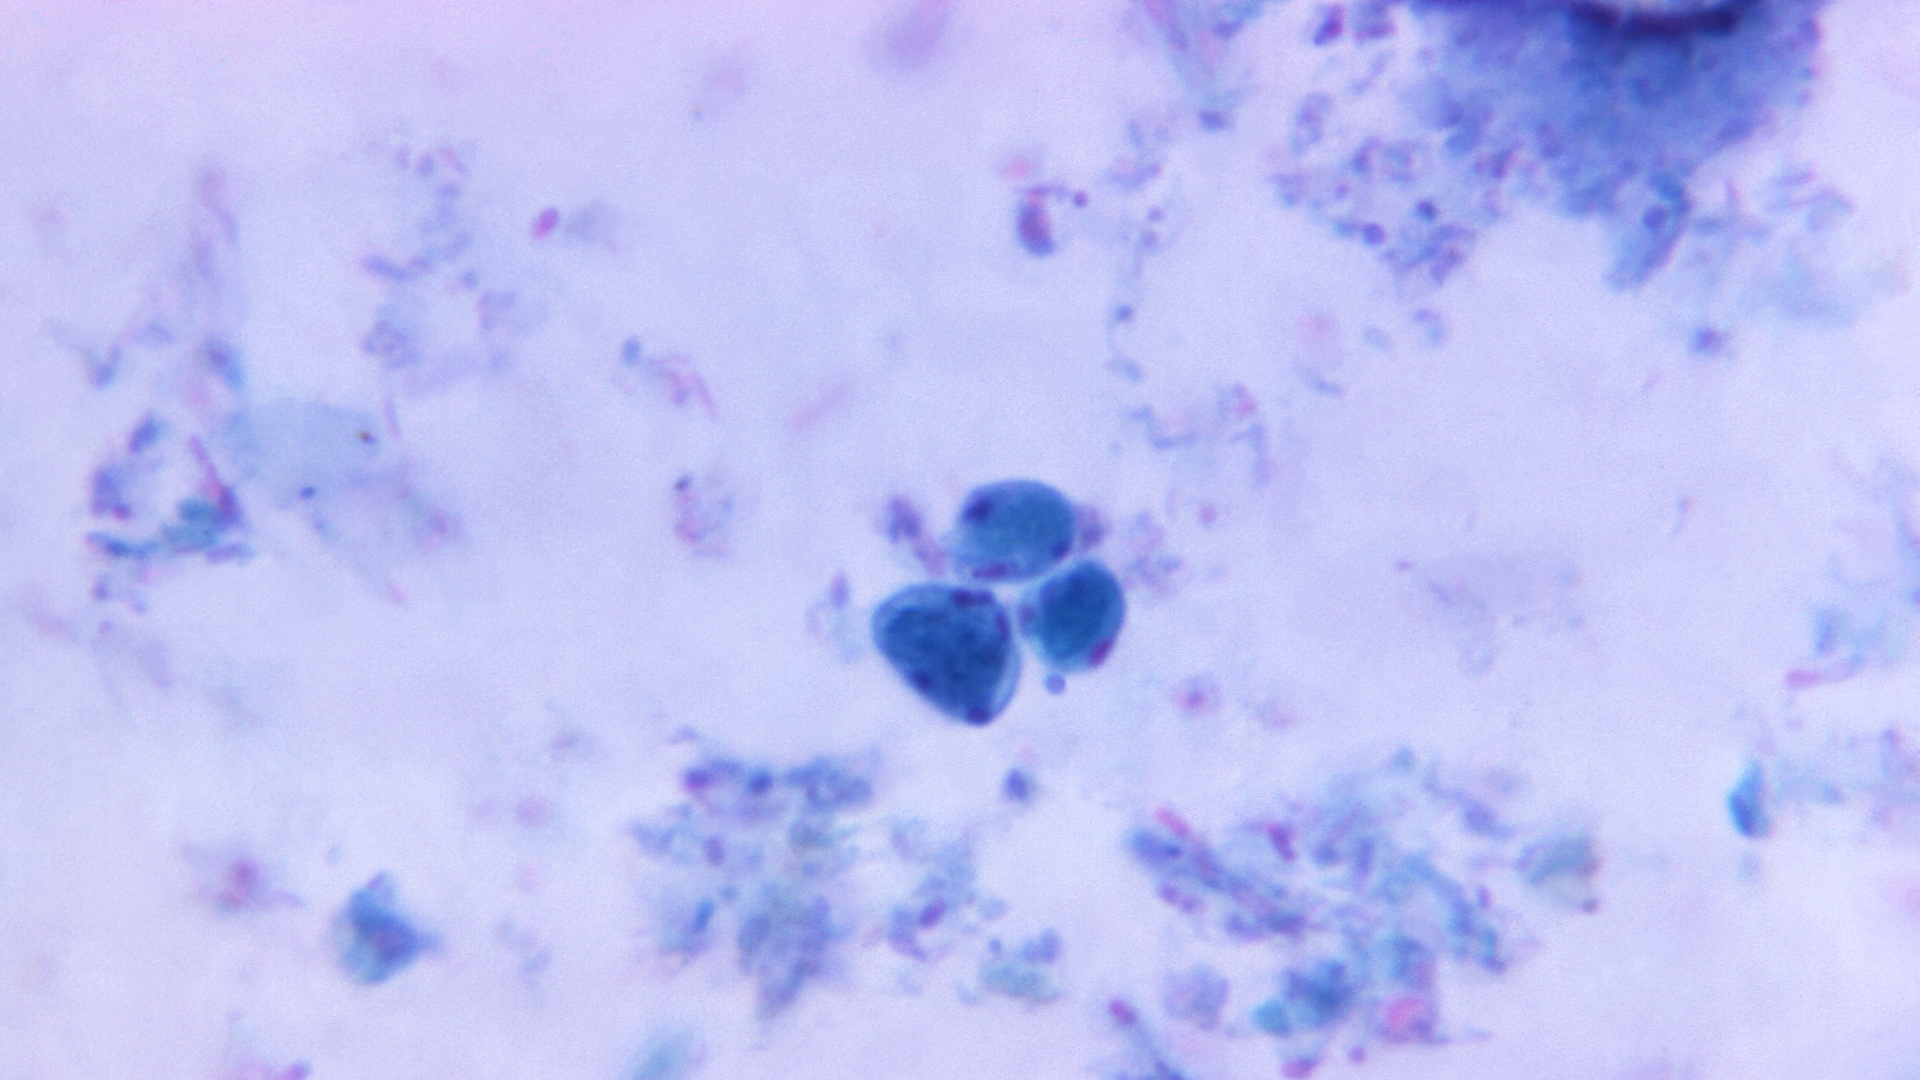 A photo of Blastocystis hominis, a parasite that causes blastocystis.